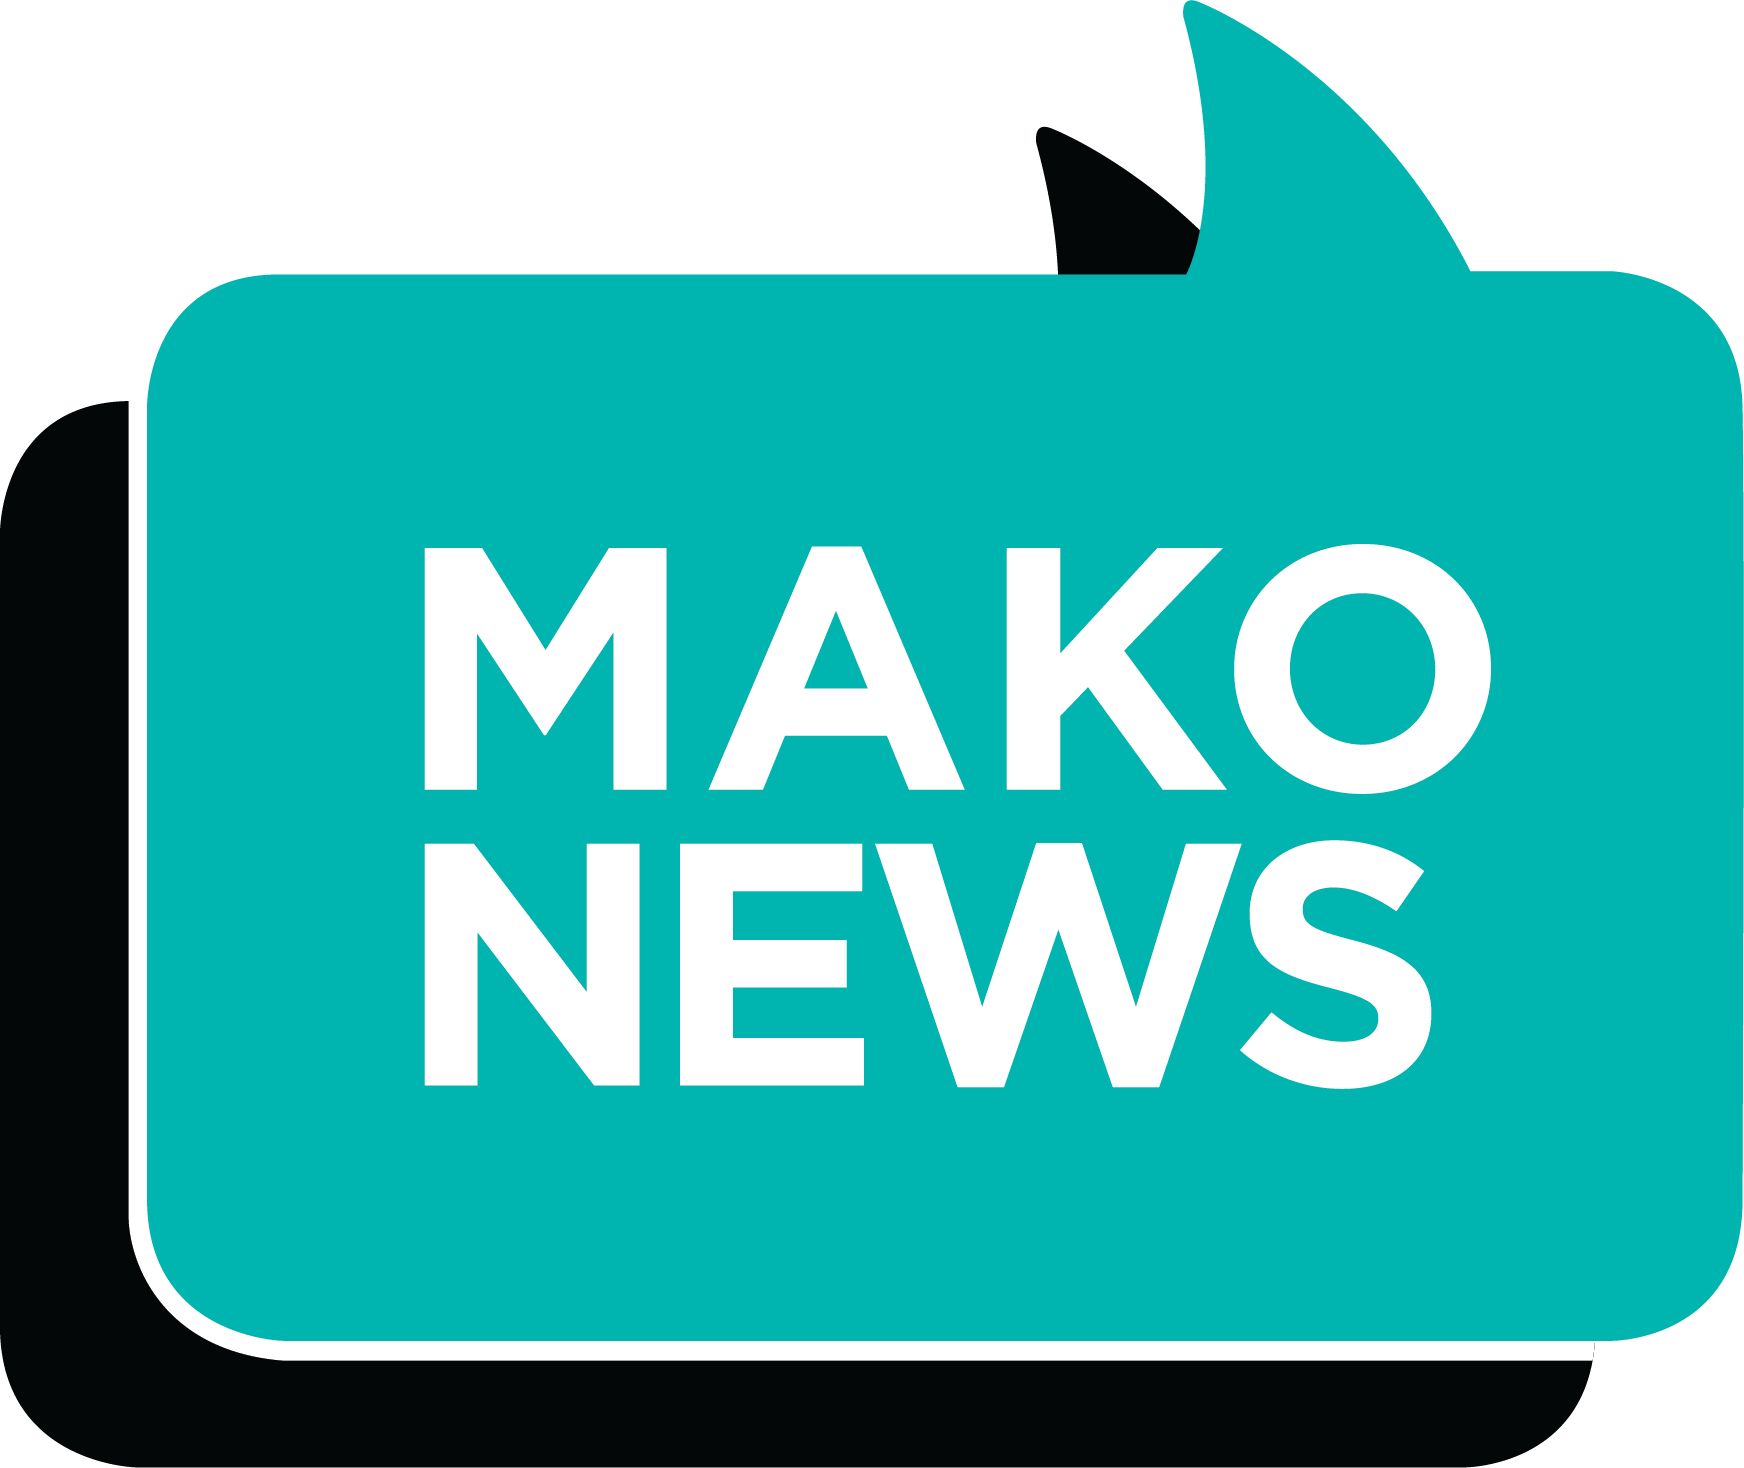 Mako news